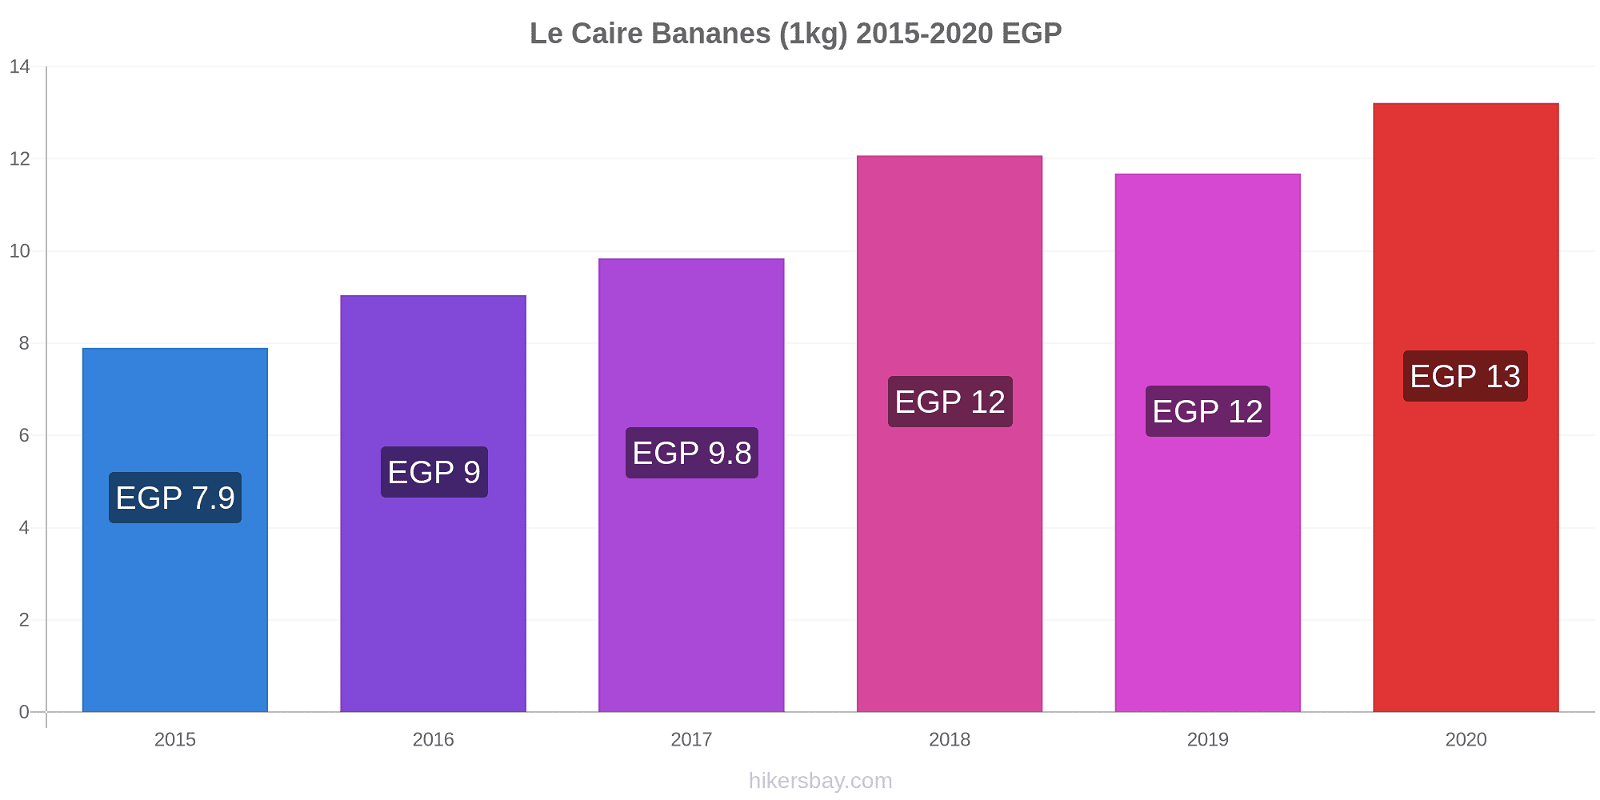 Le Caire changements de prix Bananes (1kg) hikersbay.com